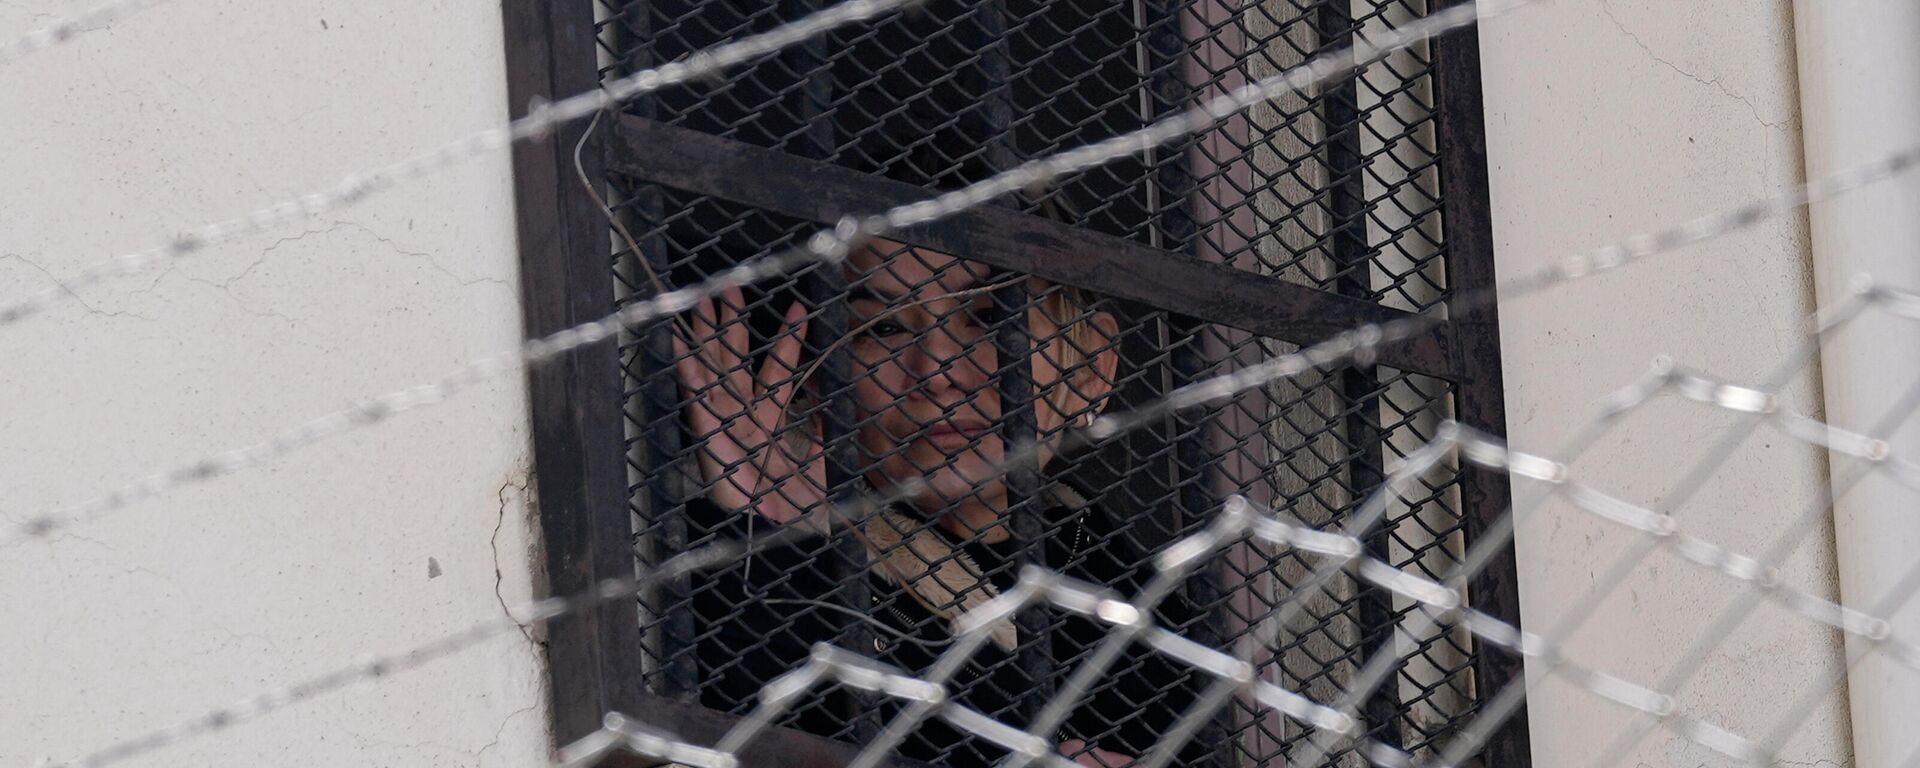 La expresidenta transitoria boliviana, Jeanine Áñez (2019-2020), en la cárcel - Sputnik Mundo, 1920, 14.02.2022